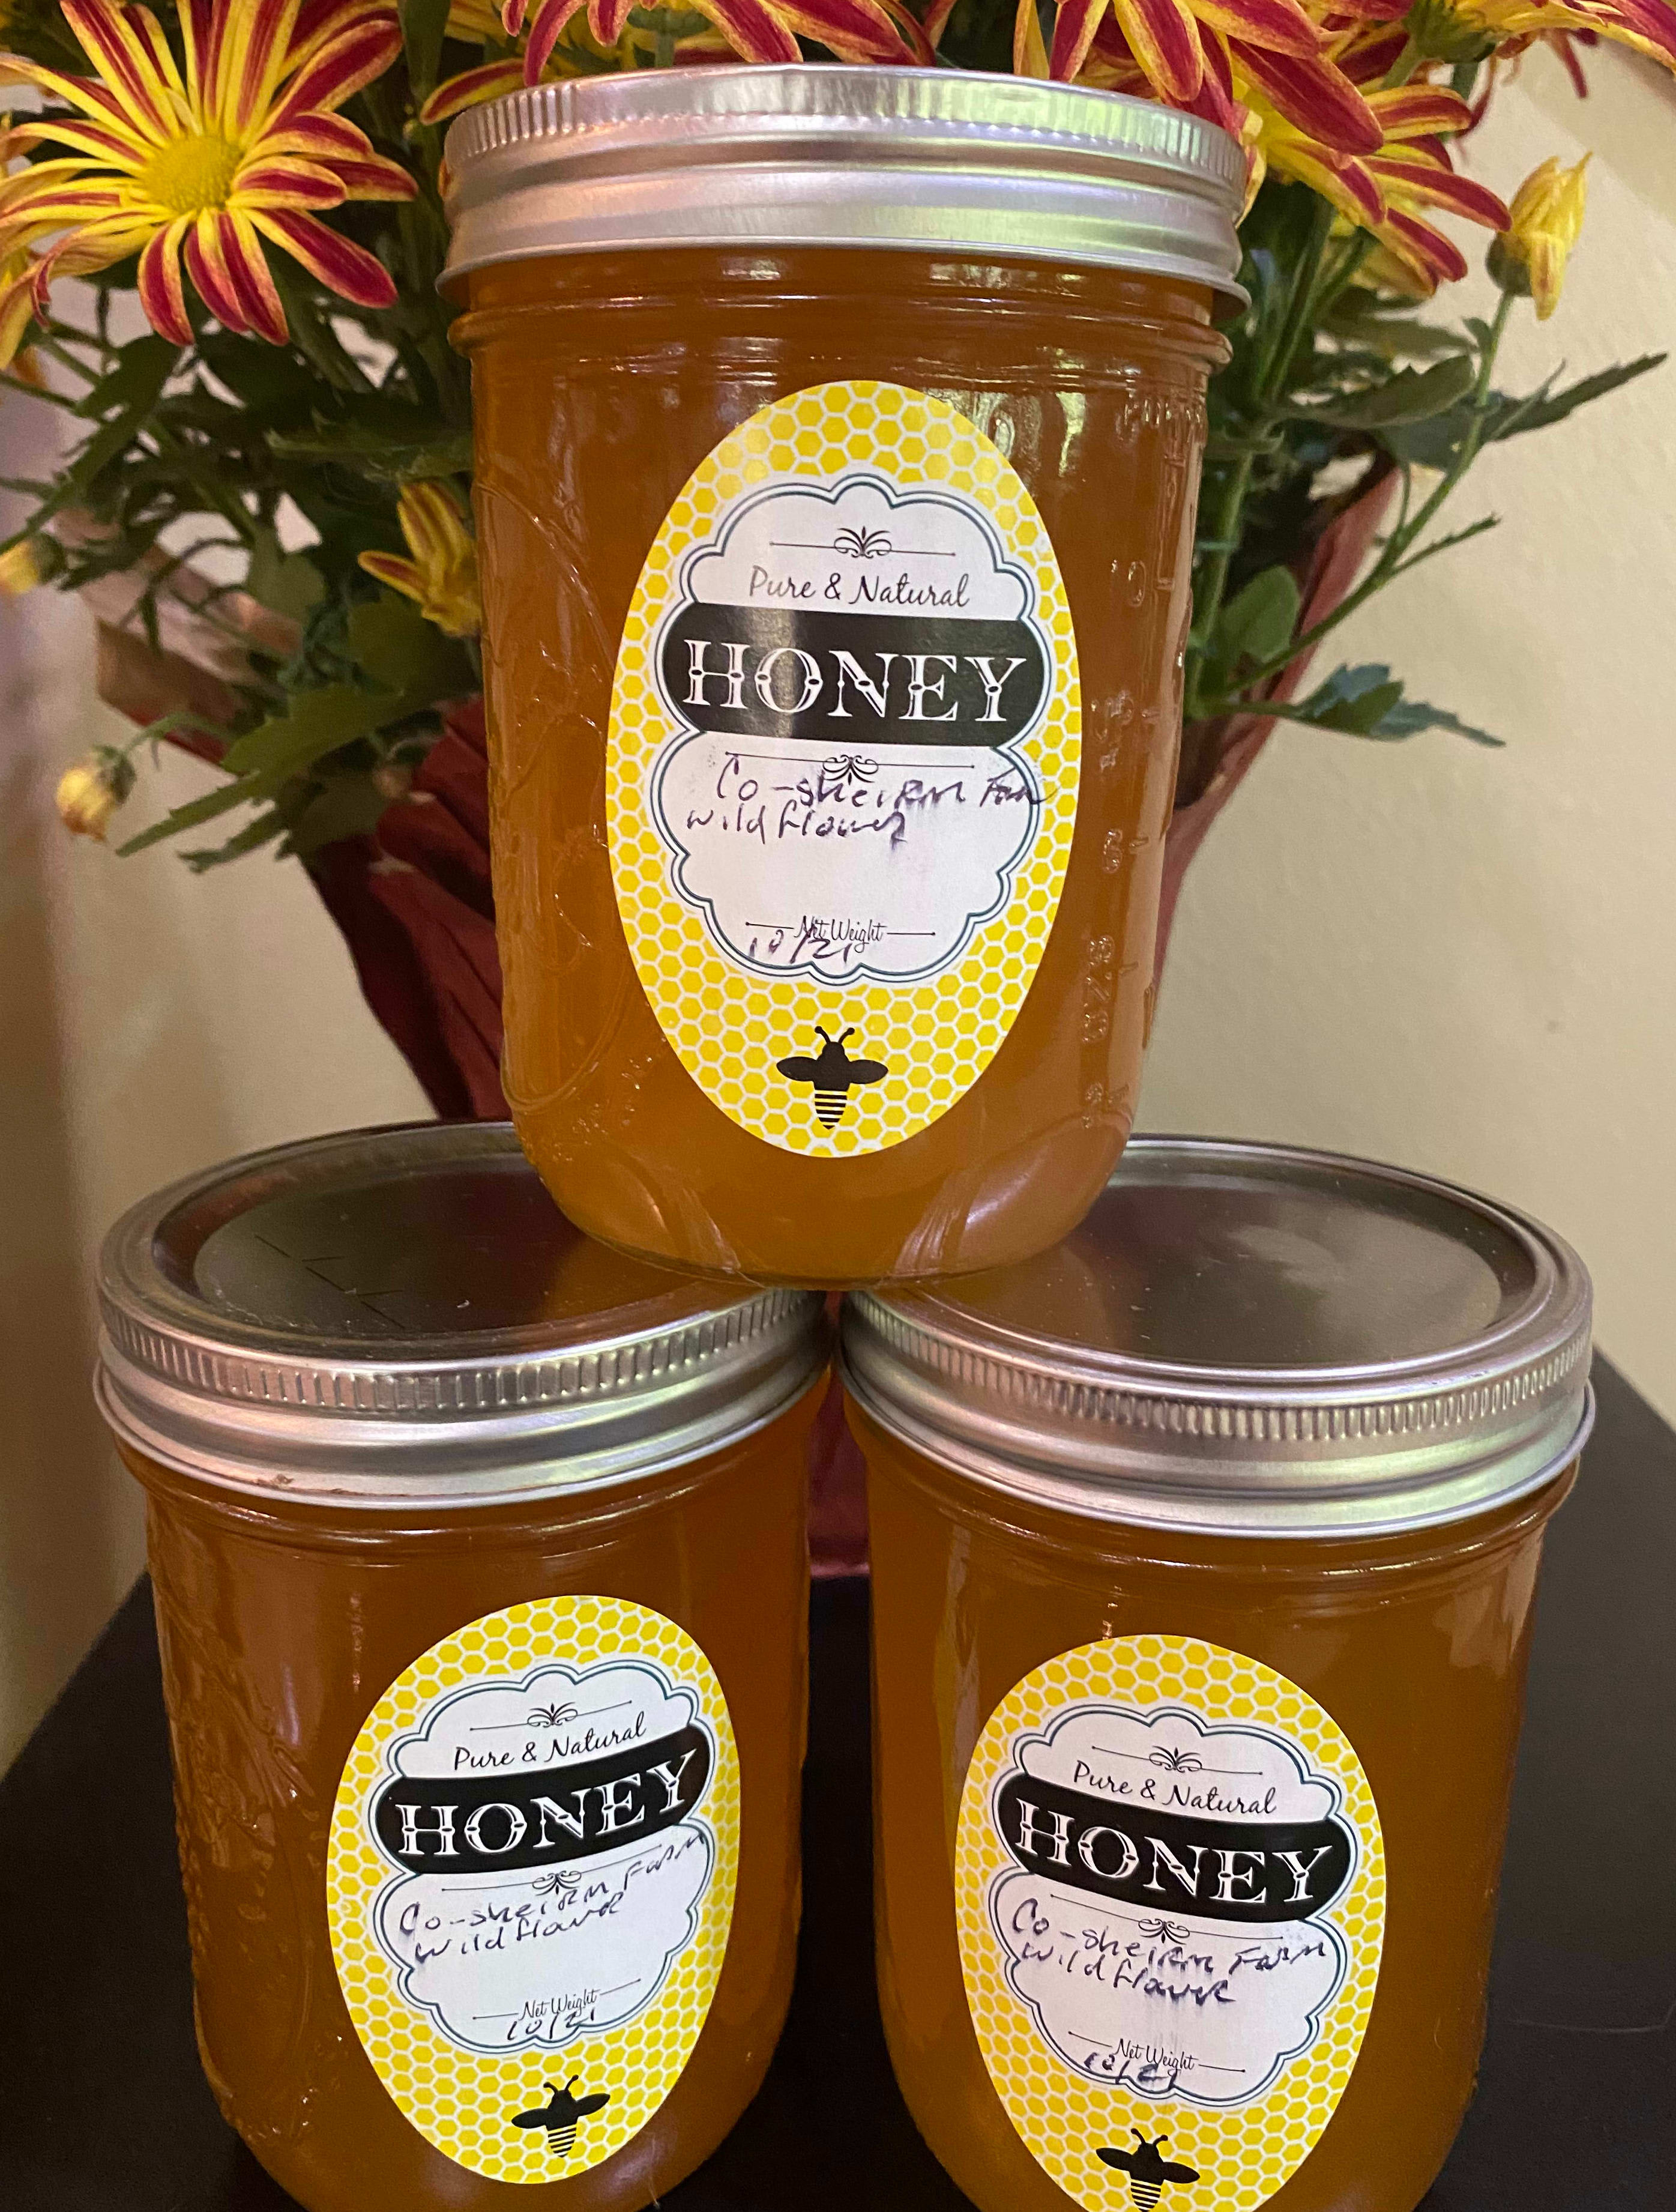 Honey - Local Wildflower